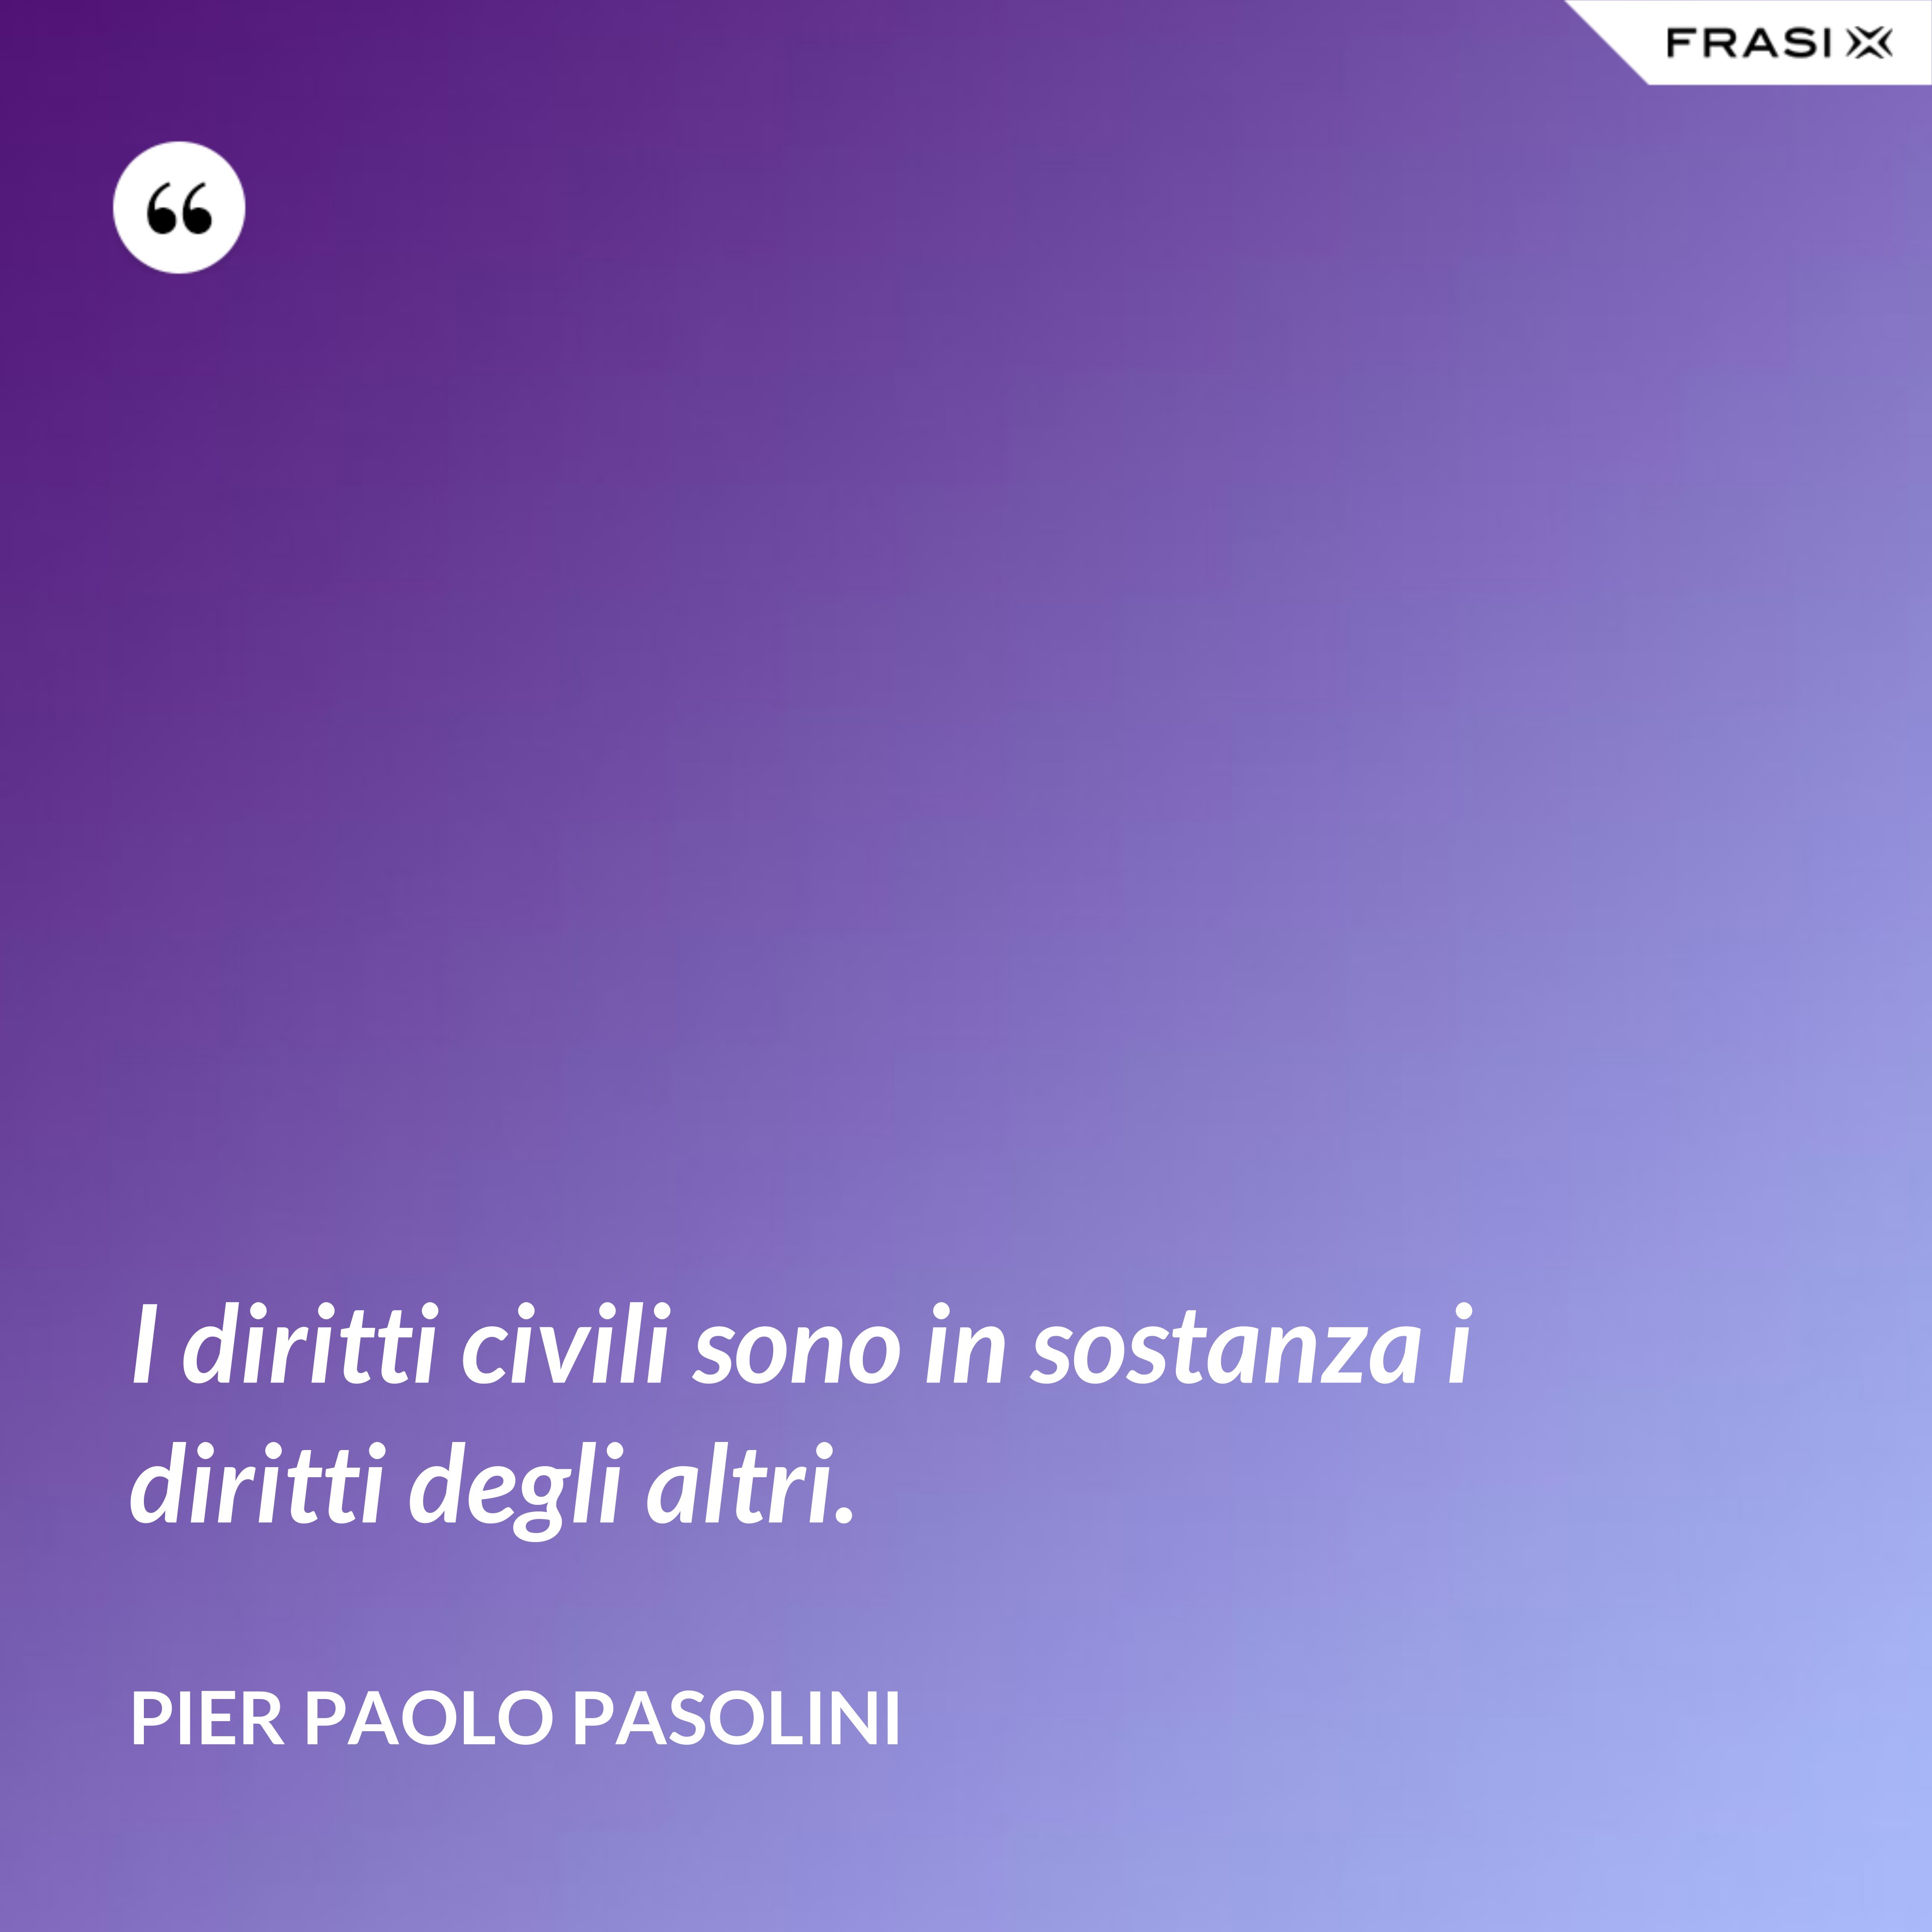 I diritti civili sono in sostanza i diritti degli altri. - Pier Paolo Pasolini